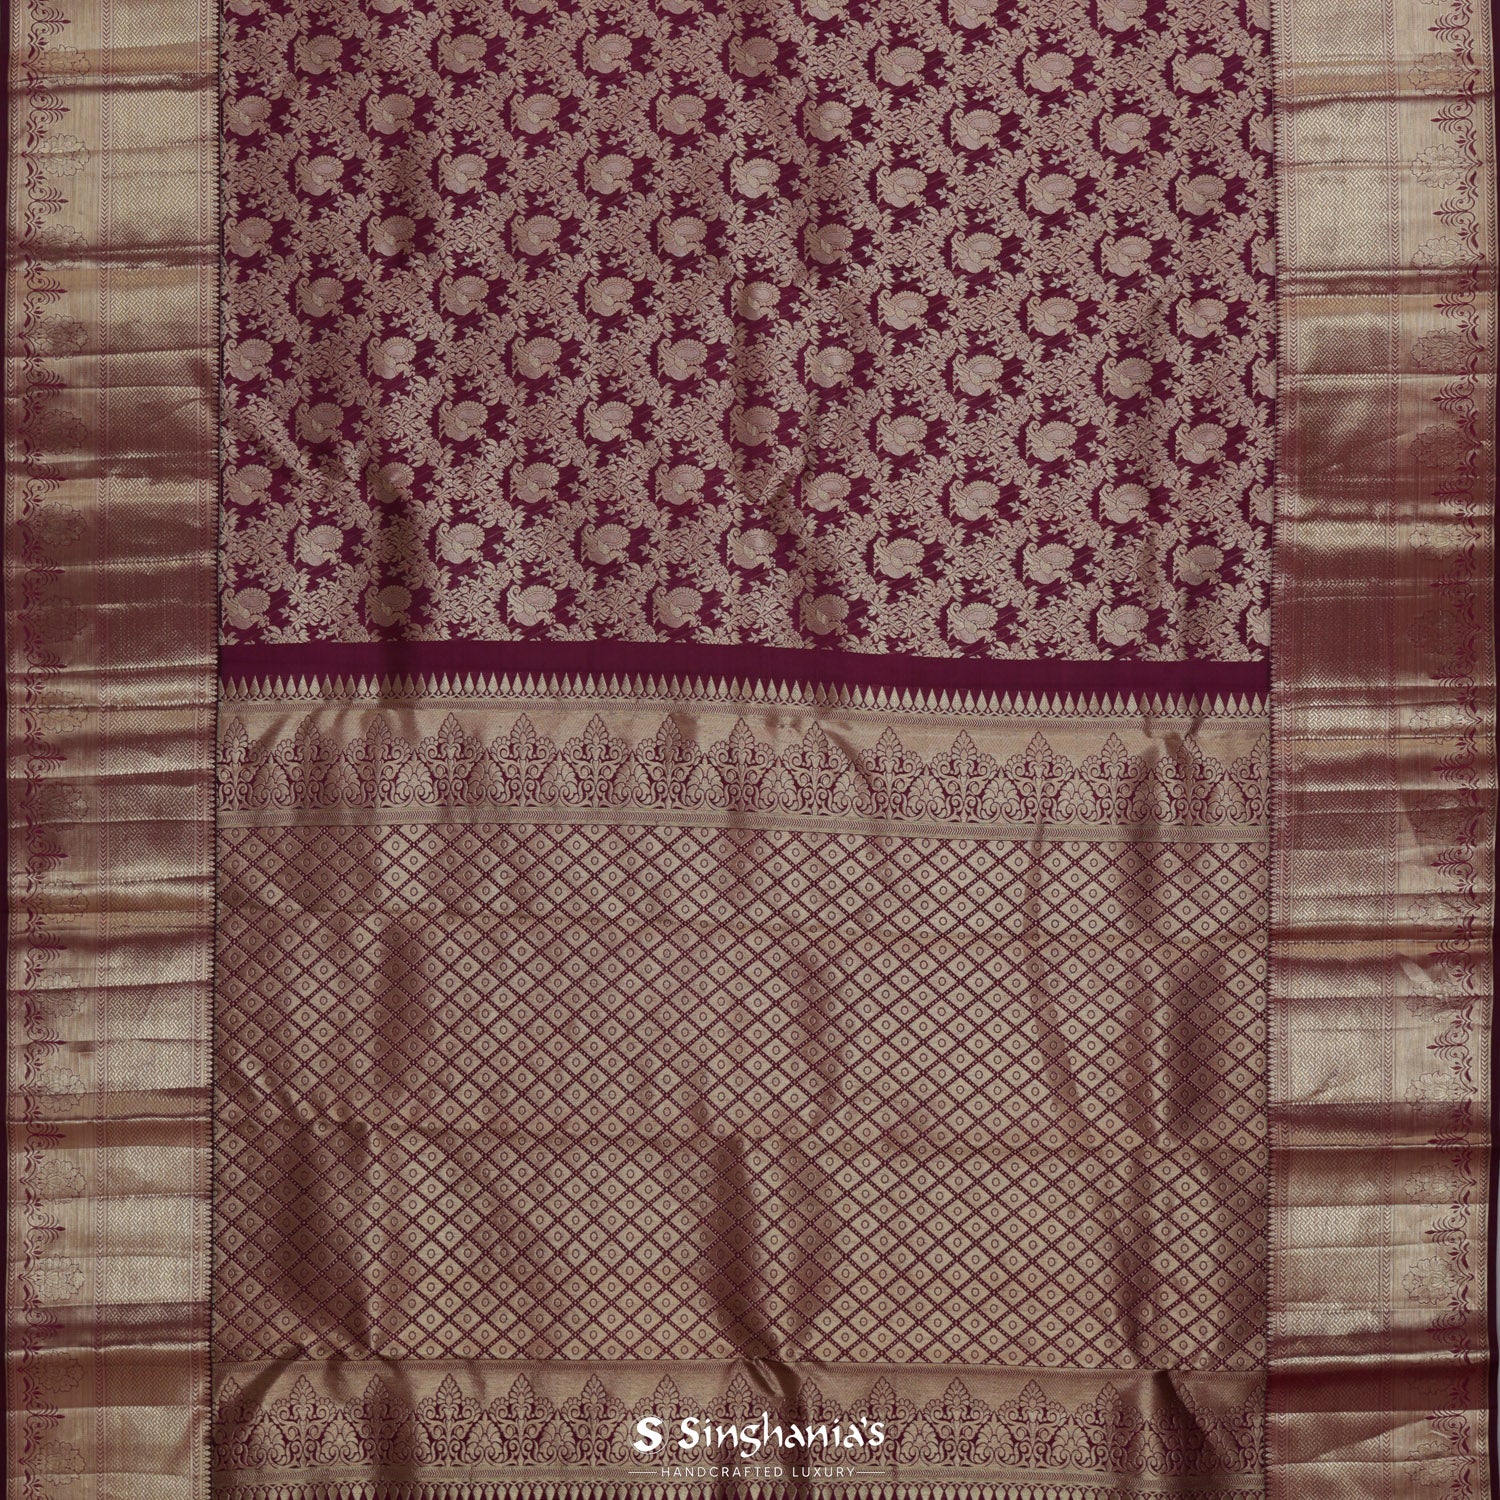 Tyrian Purple Kanjivaram Silk Saree With Peacock Motifs In Diamond Floral Pattern